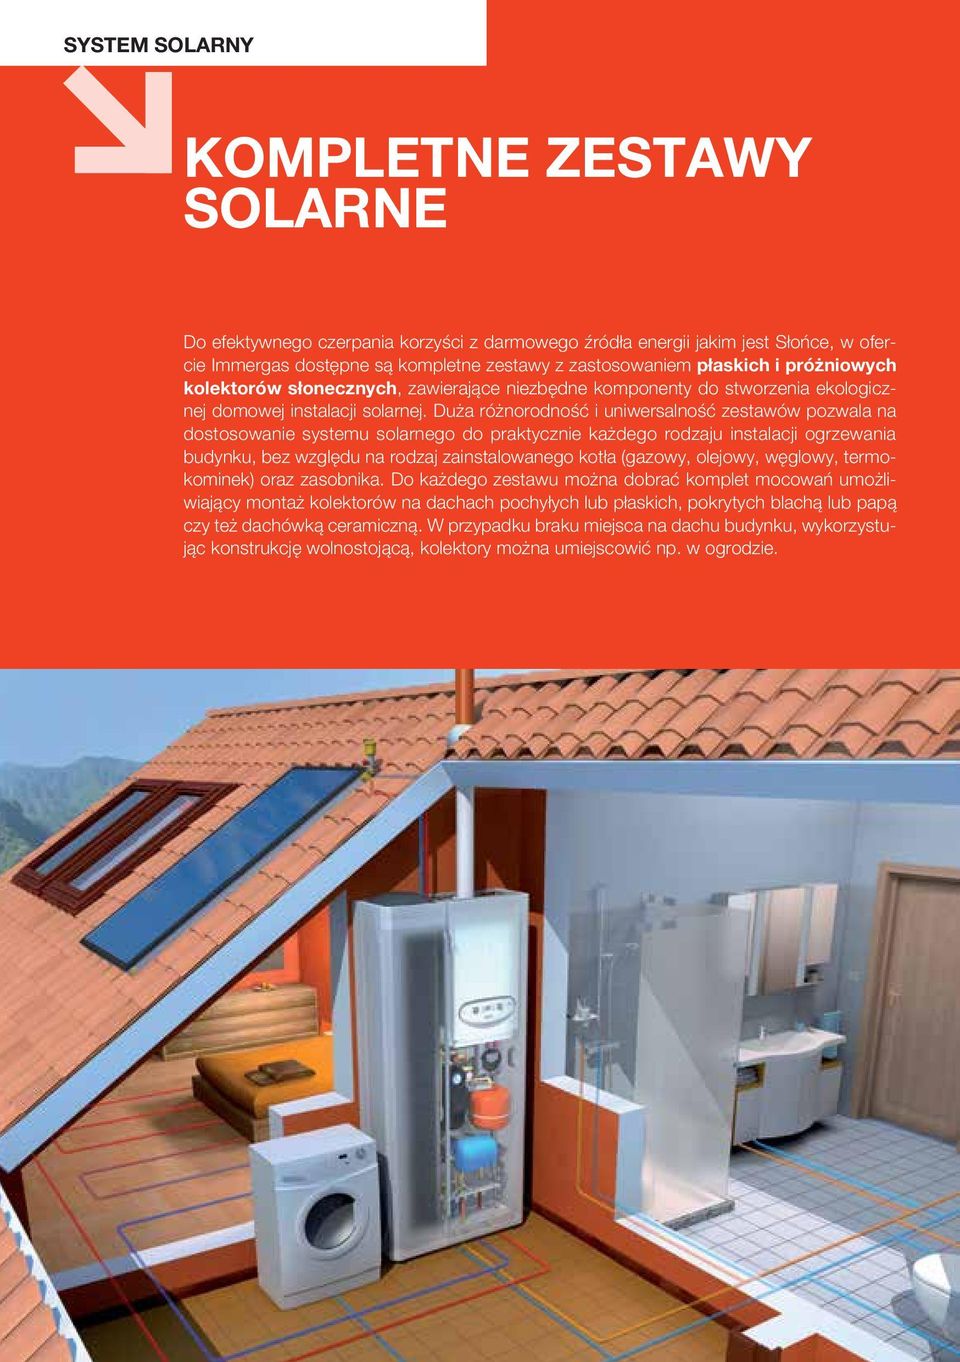 Duża różnorodność i uniwersalność zestawów pozwala na dostosowanie systemu solarnego do praktycznie każdego rodzaju instalacji ogrzewania budynku, bez względu na rodzaj zainstalowanego kotła (gazowy,